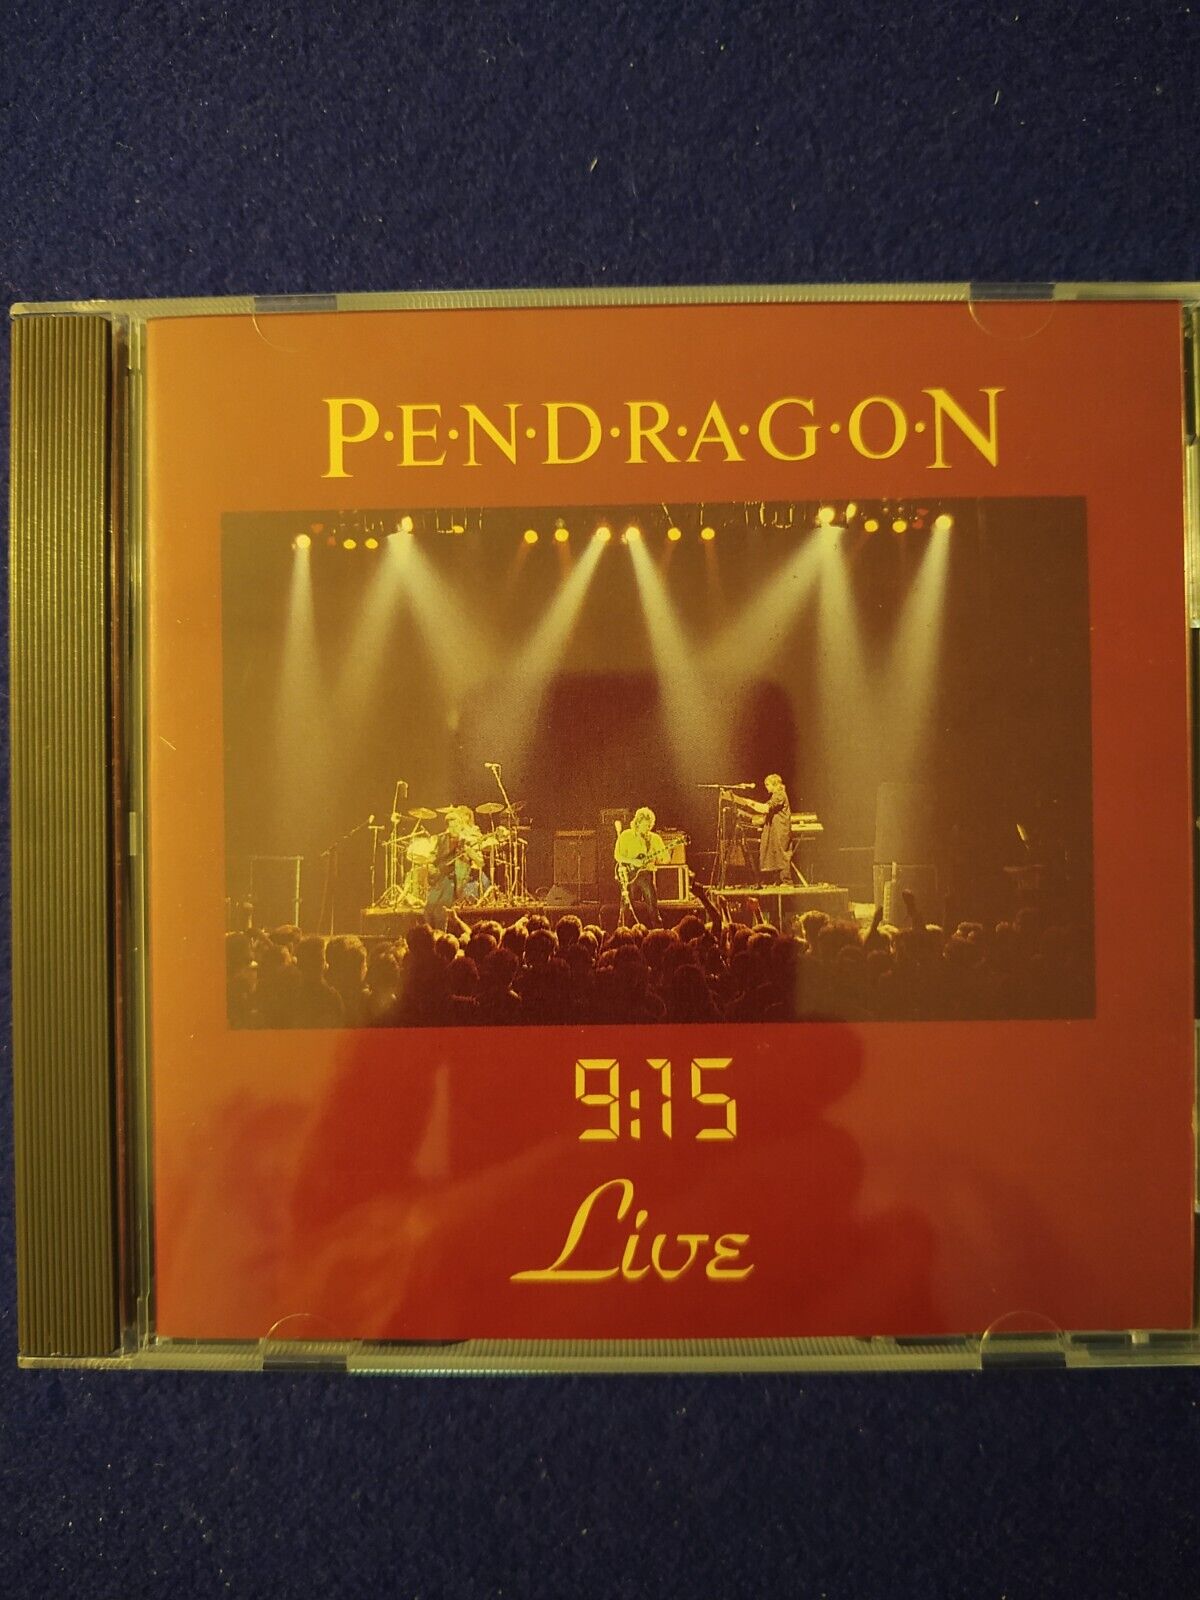 Pendragon--9:15 Live 